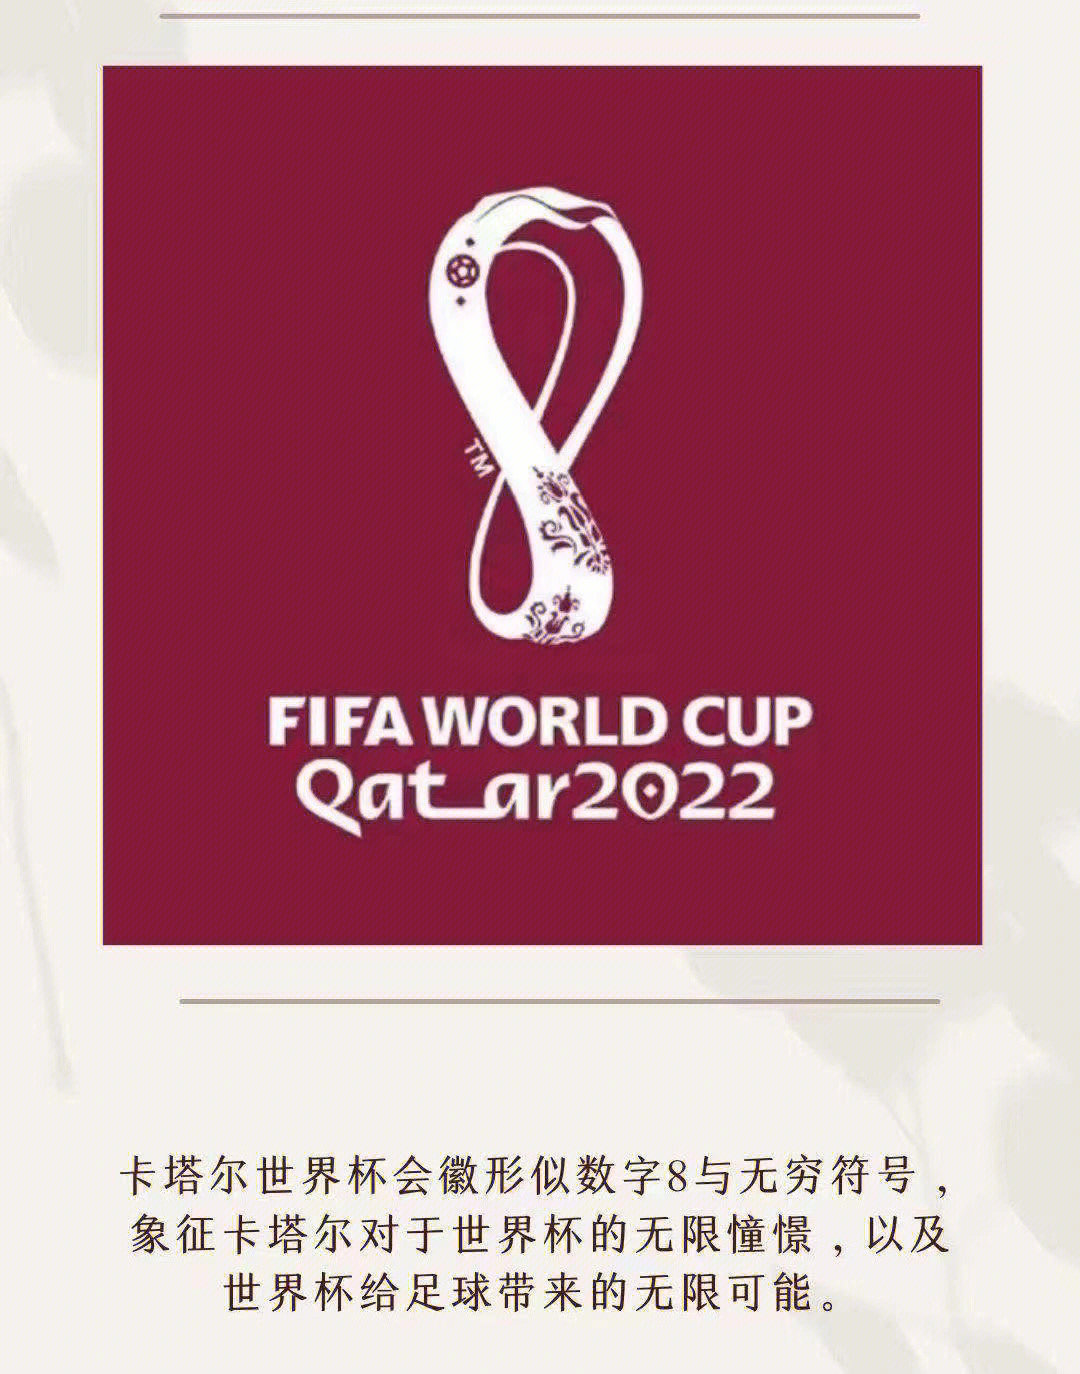 2022年卡塔尔世界杯会徽是基于大力神杯的原型设计完成的,图案上有着